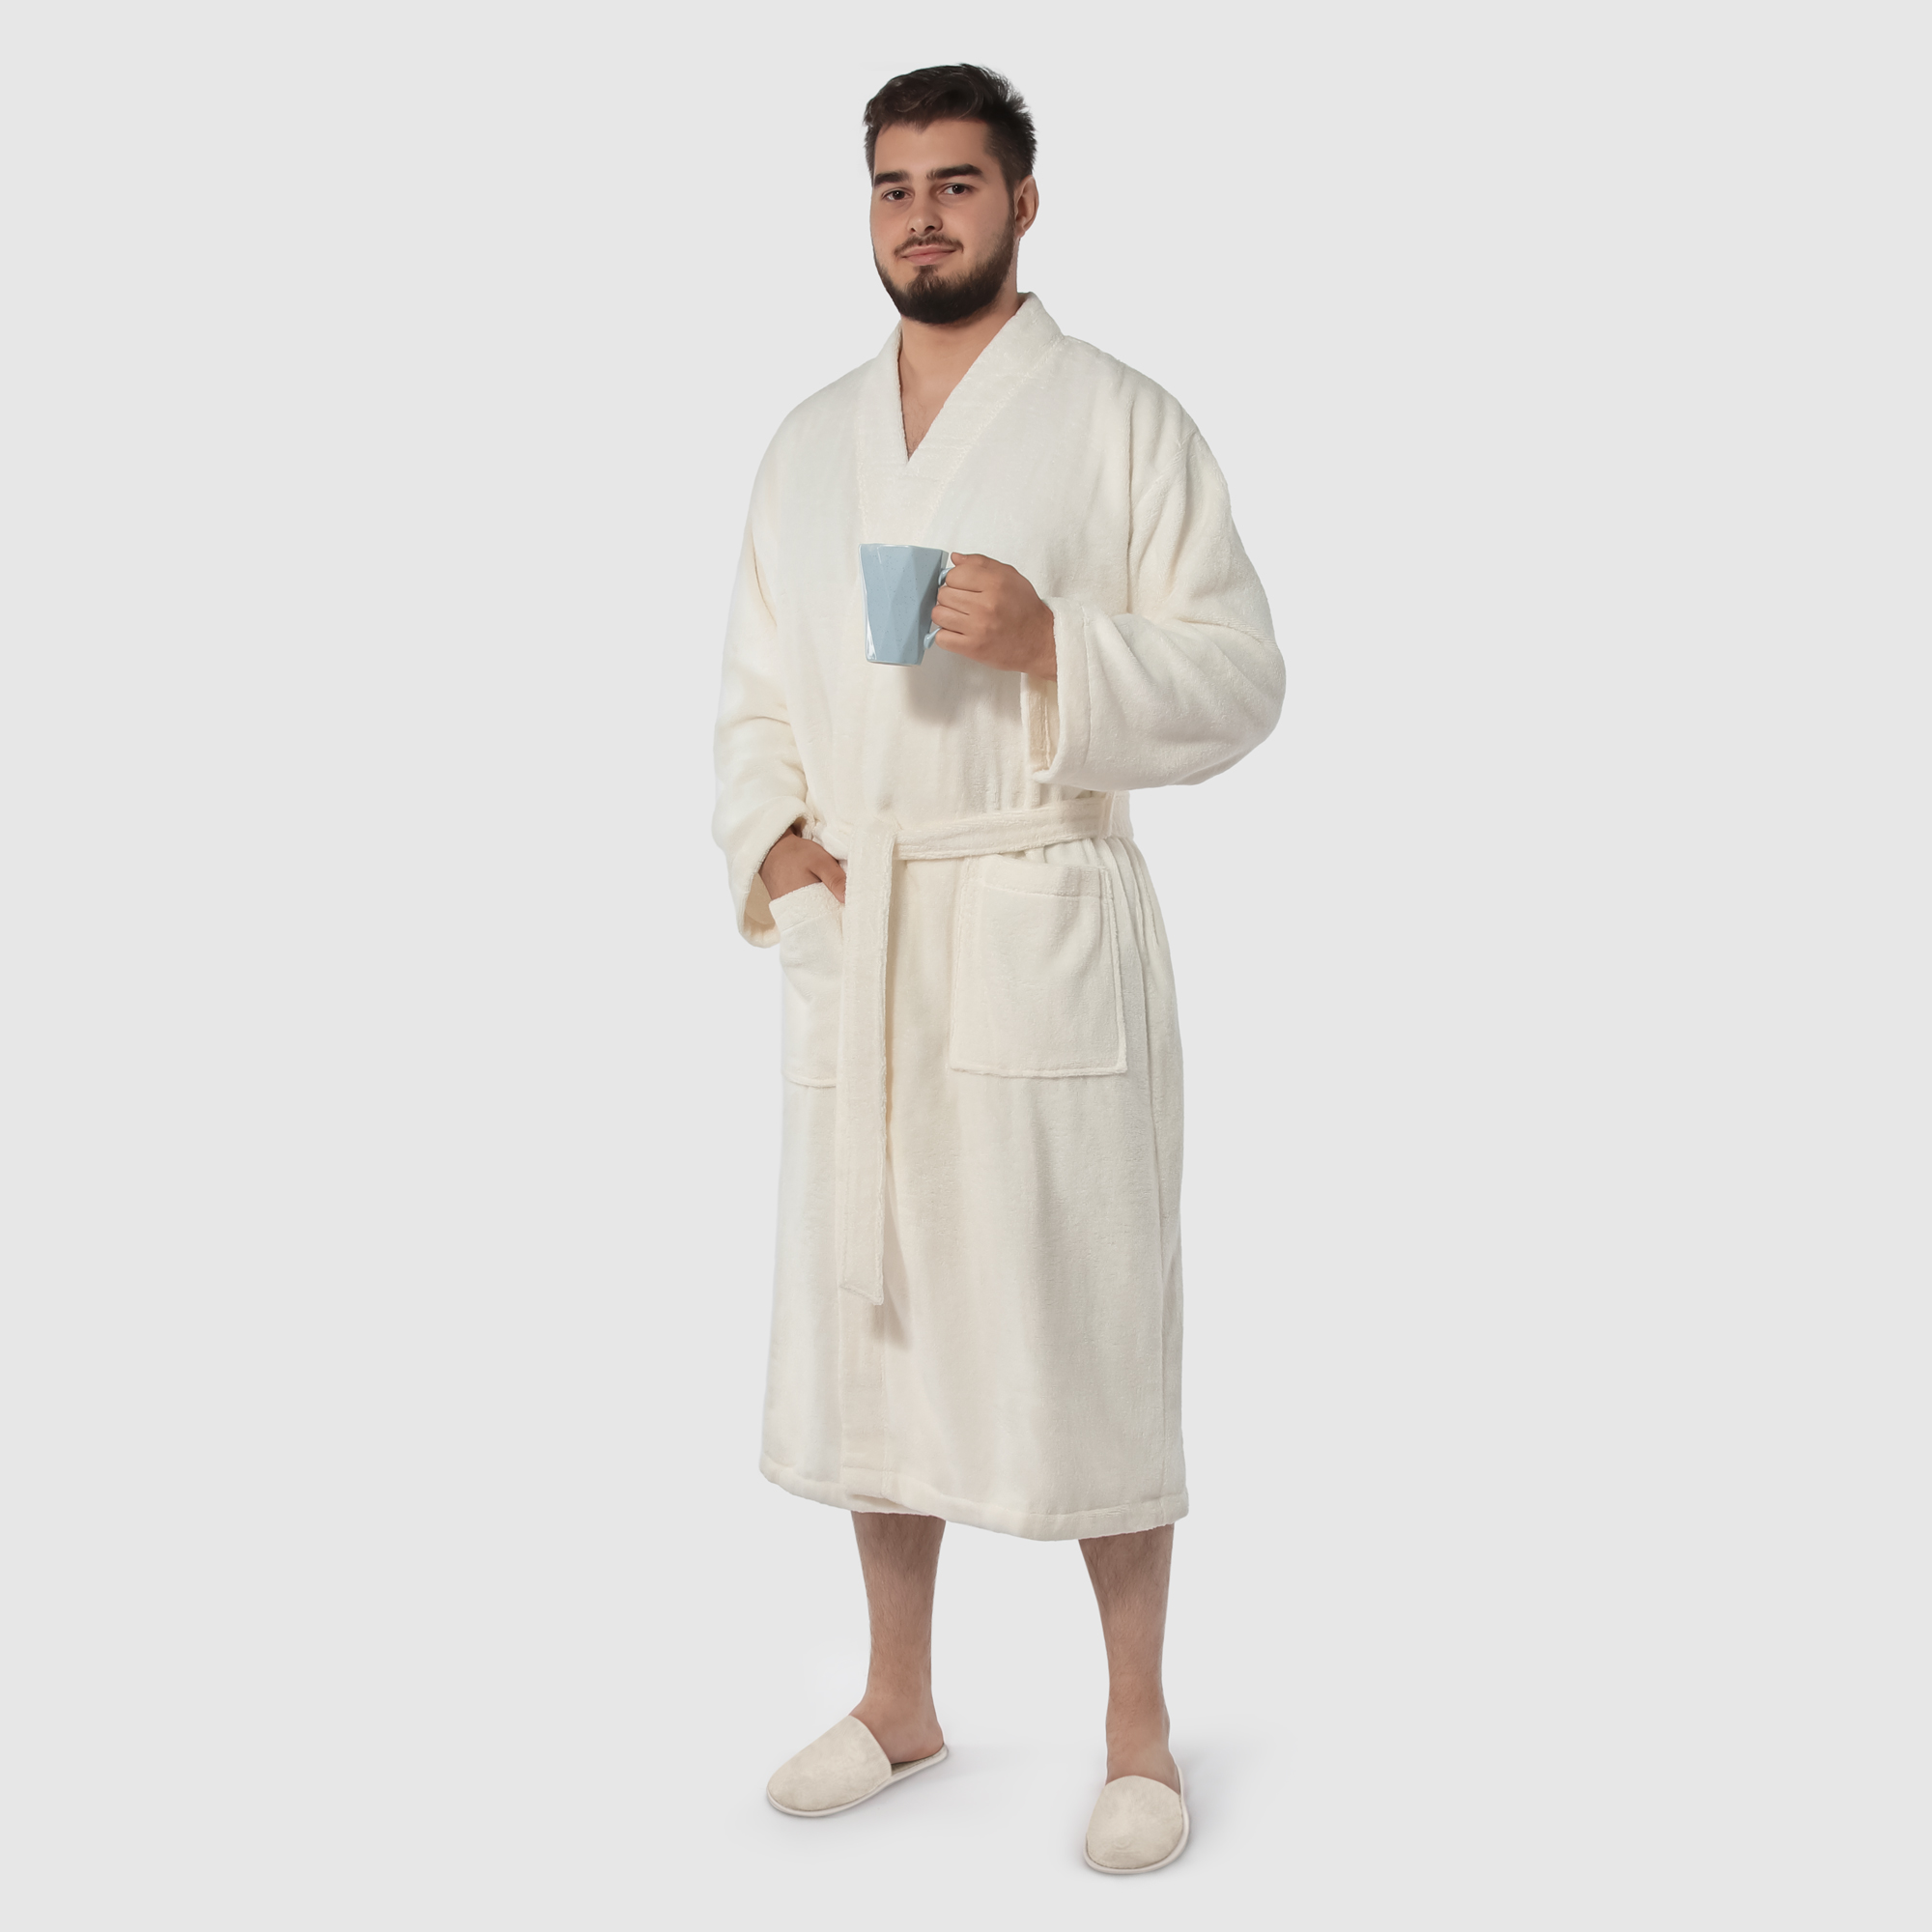 Мужской халат Maisonette Parla кремовый XL халат мужской asil sauna brown xl махровый с капюшоном